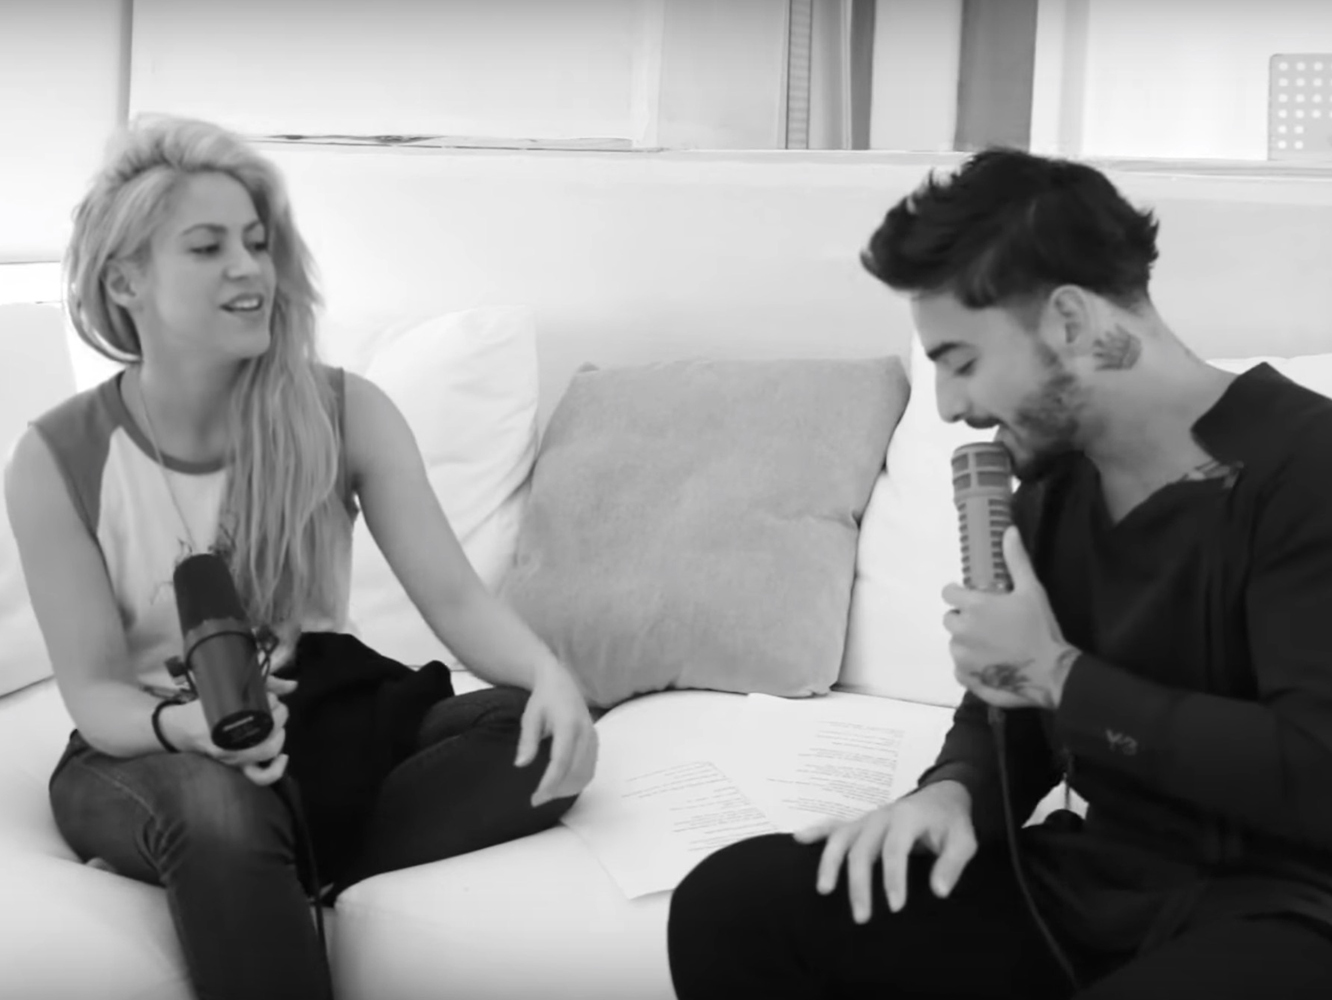 Shakira comparte un vídeo junto a Maluma cantando ‘Trap’ en el estudio